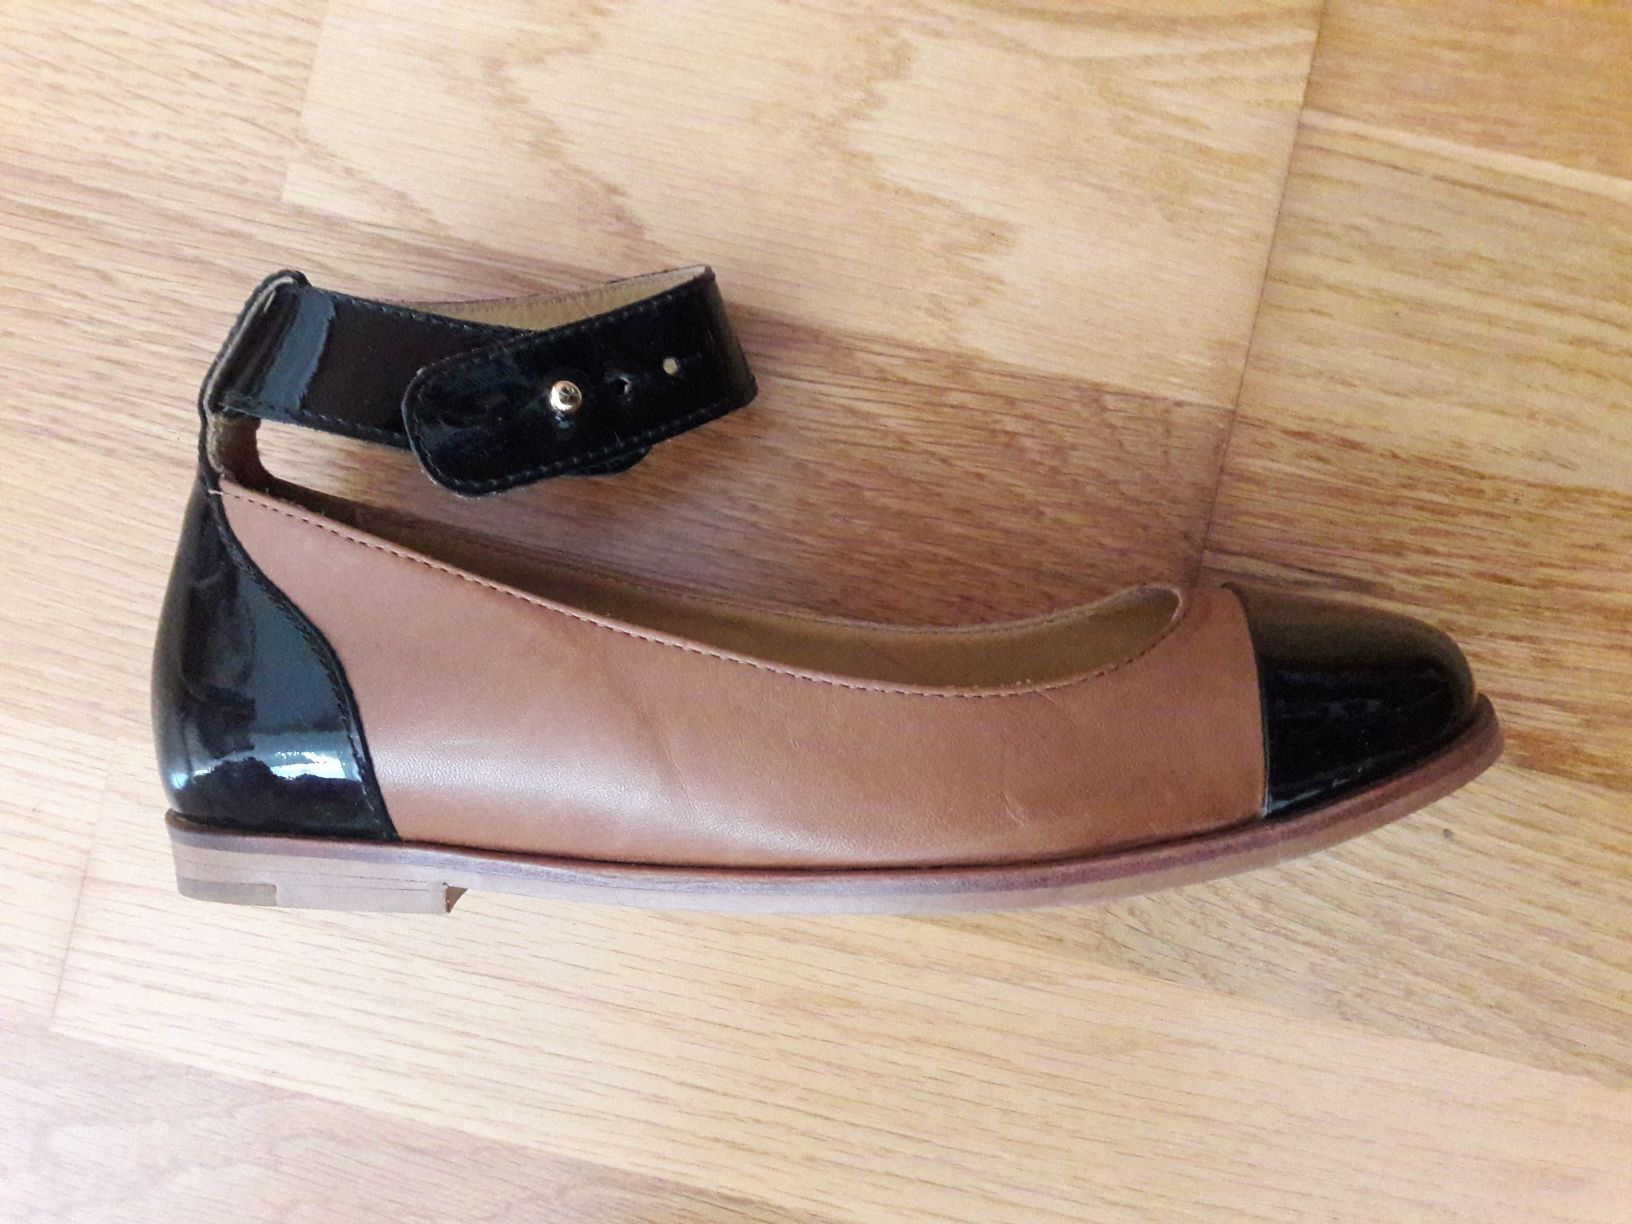 Sapatos novos da Eureka shoes, Cor camel e preto, nr 36